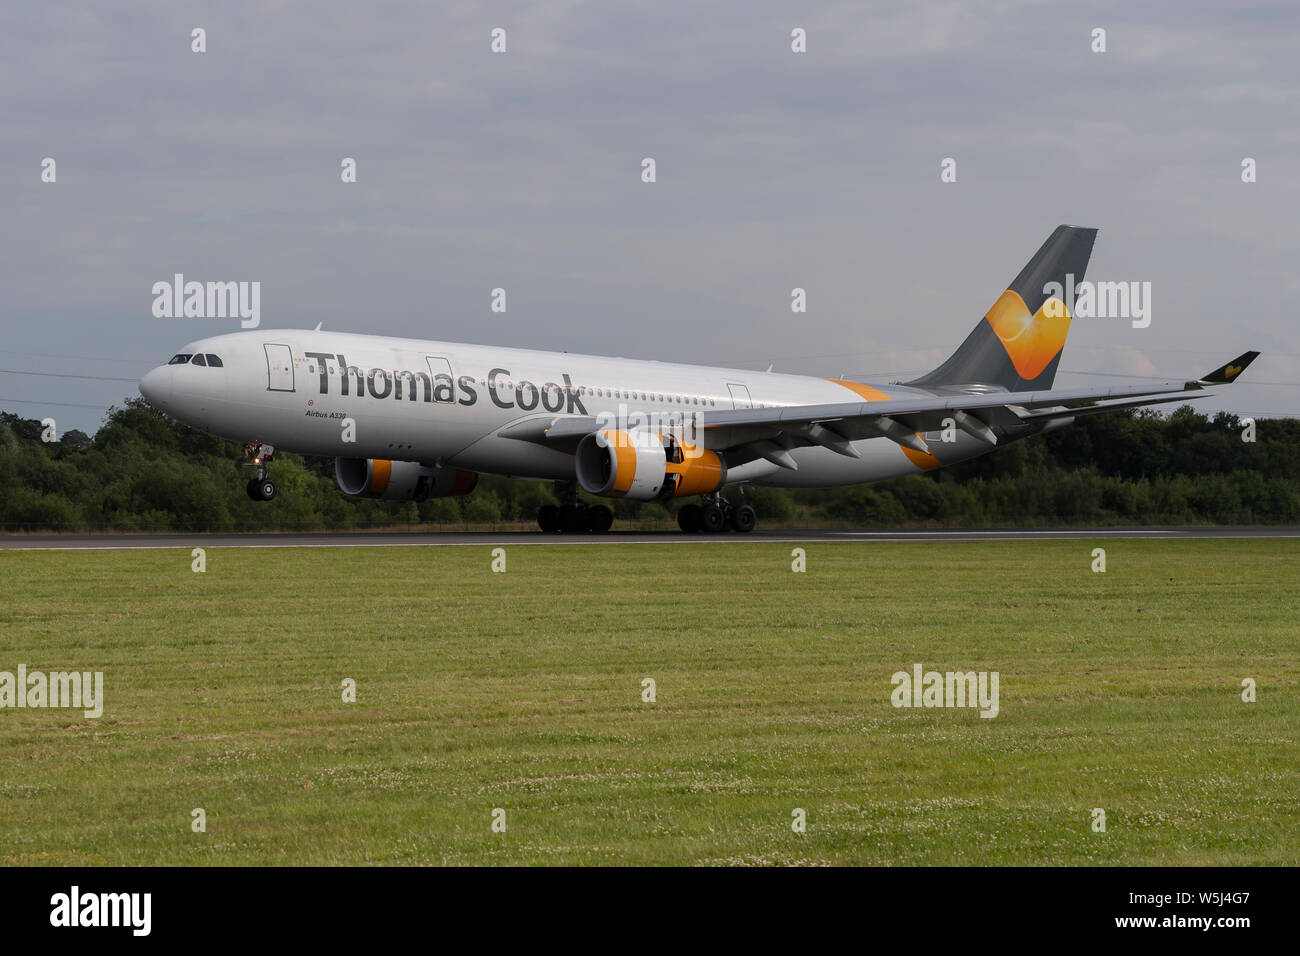 A Thomas Cook Airlines Airbus A330-200 aterriza en el aeropuerto internacional de Manchester (uso Editorial solamente) Foto de stock